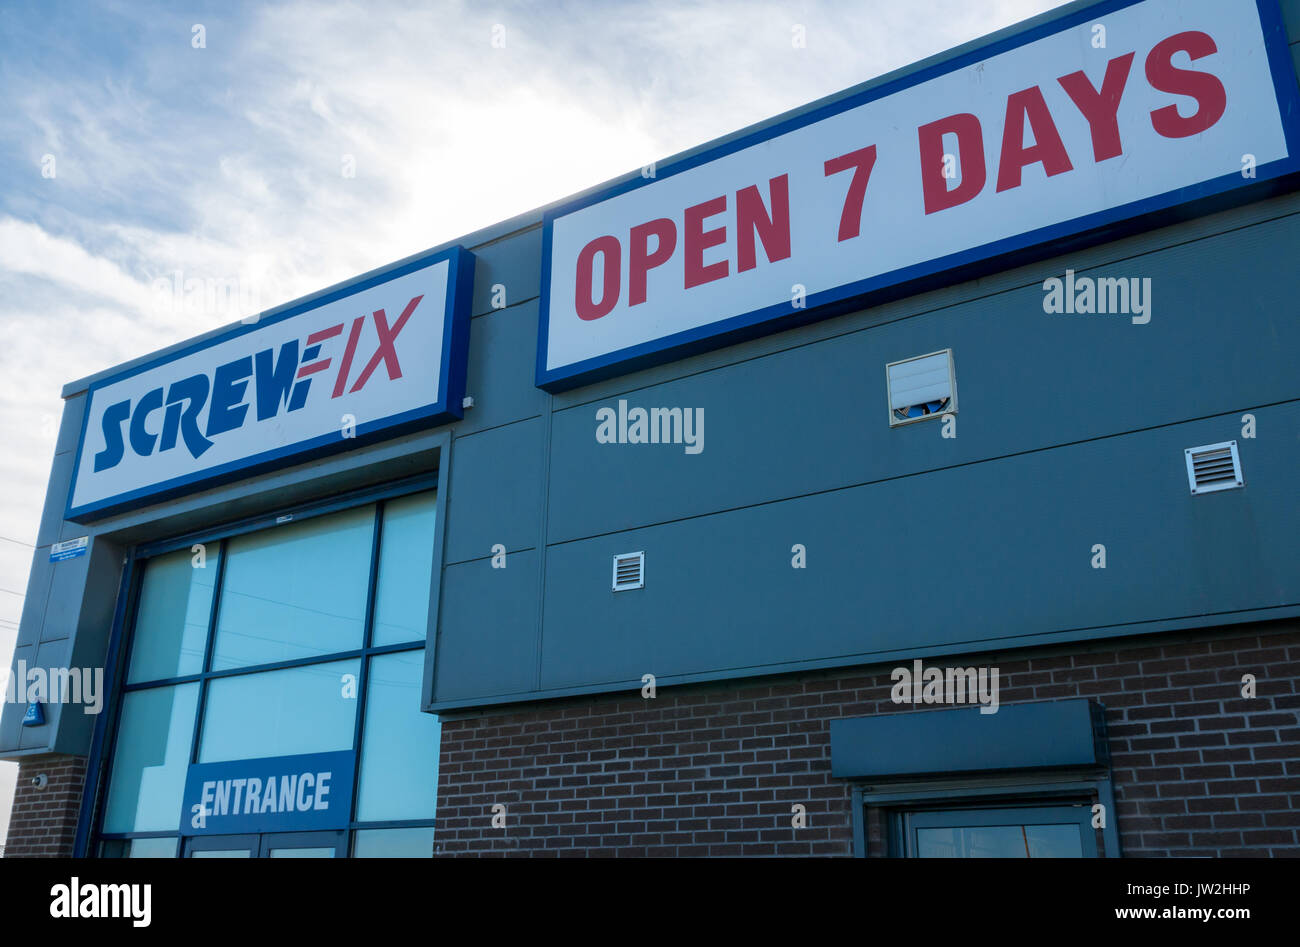 Screwfix shop front contre le ciel bleu, avec panneau disant ouvert 7 jours, le Seafield, Leith, Edinburgh, Ecosse, Royaume-Uni Banque D'Images